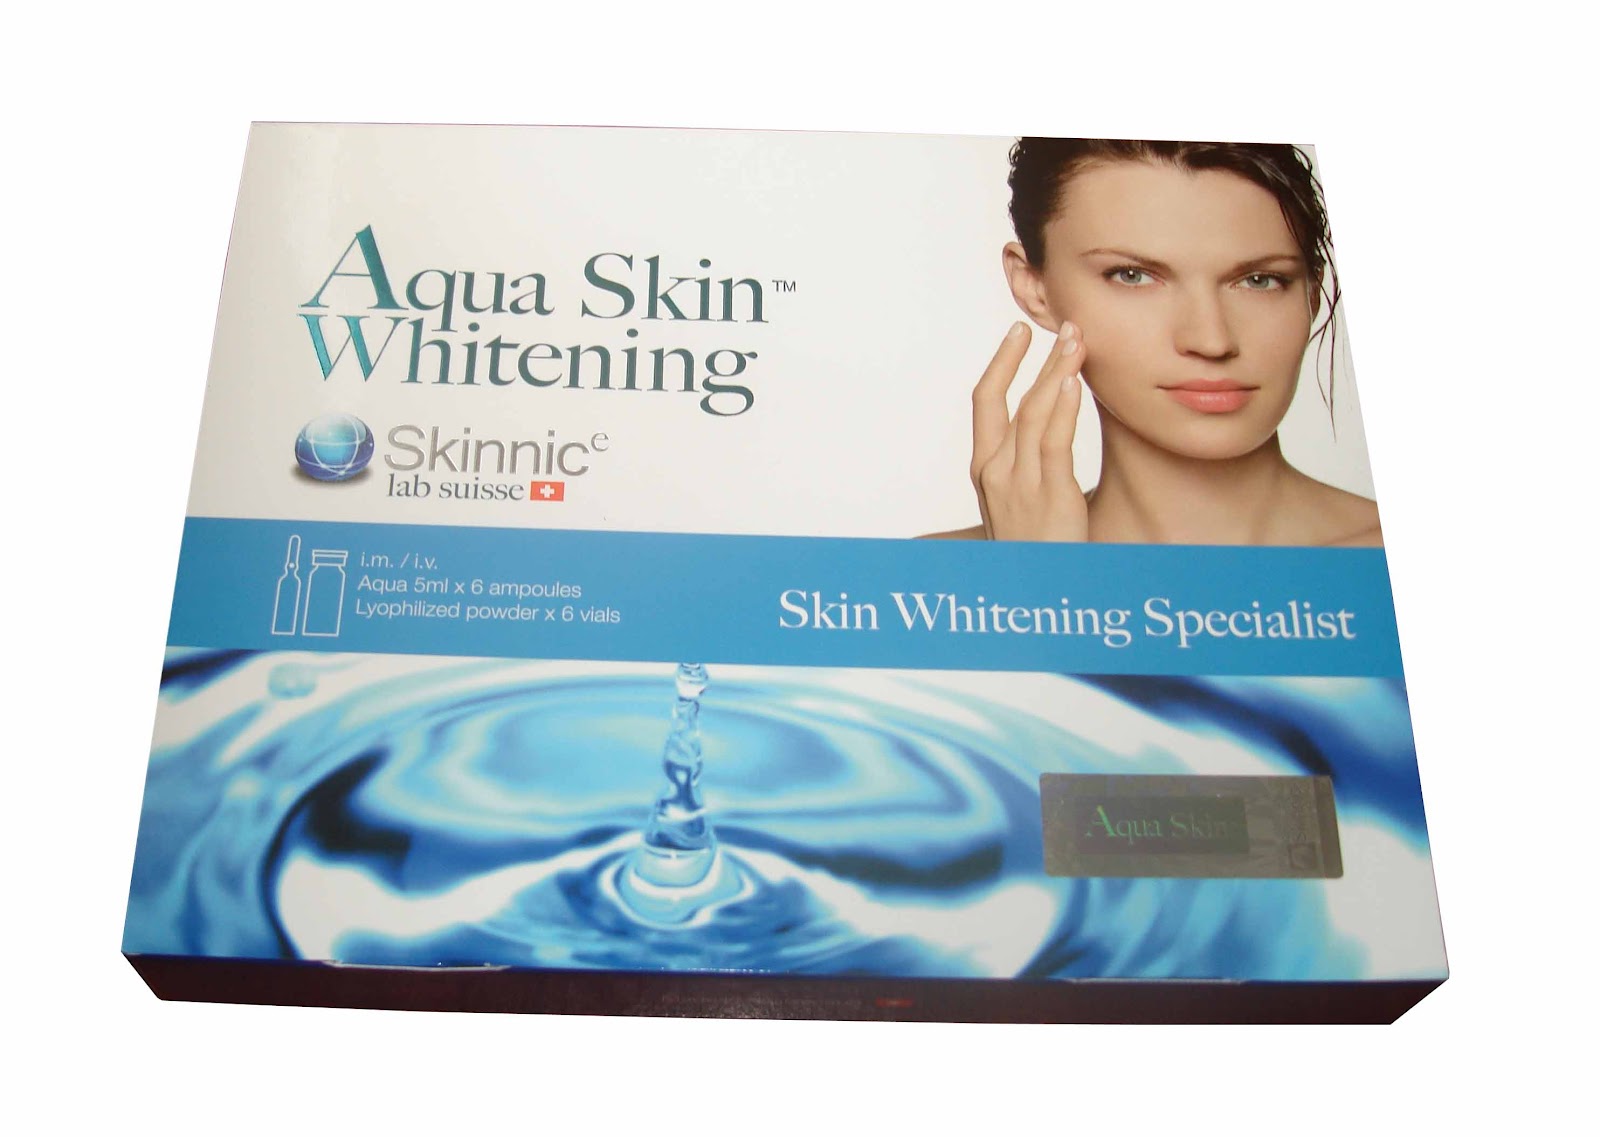 Aqua Skin Whitening Skinnic